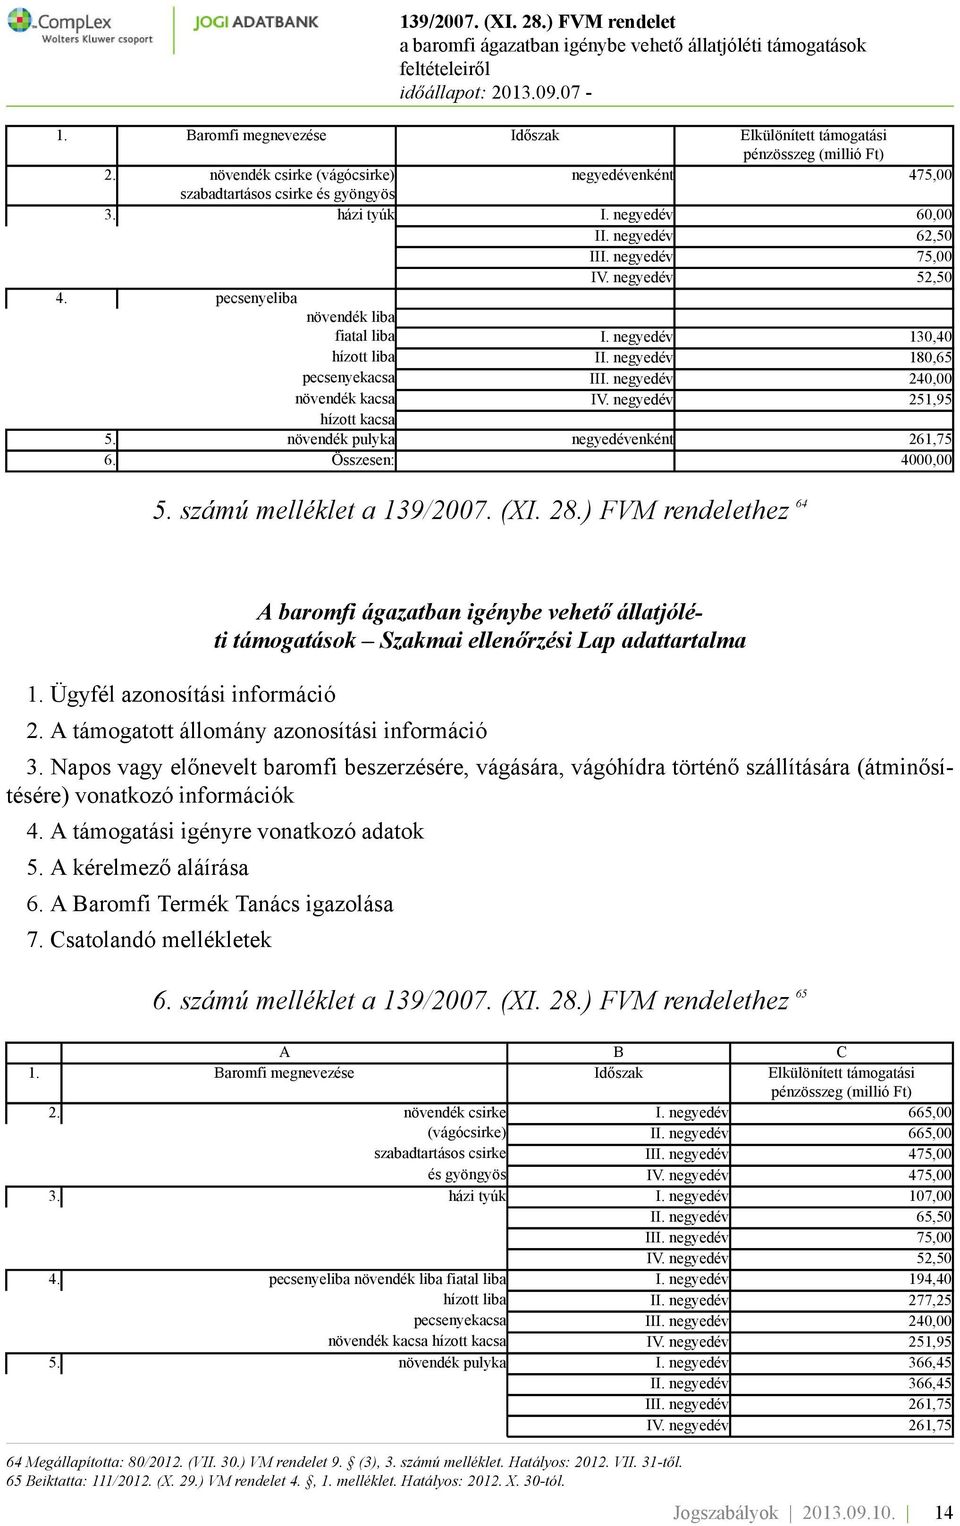 negyedév 251,95 hízott kacsa 5. növendék pulyka negyedévenként 261,75 6. Összesen: 4000,00 5. számú melléklet a 139/2007. (XI. 28.) FVM rendelethez 64 1.